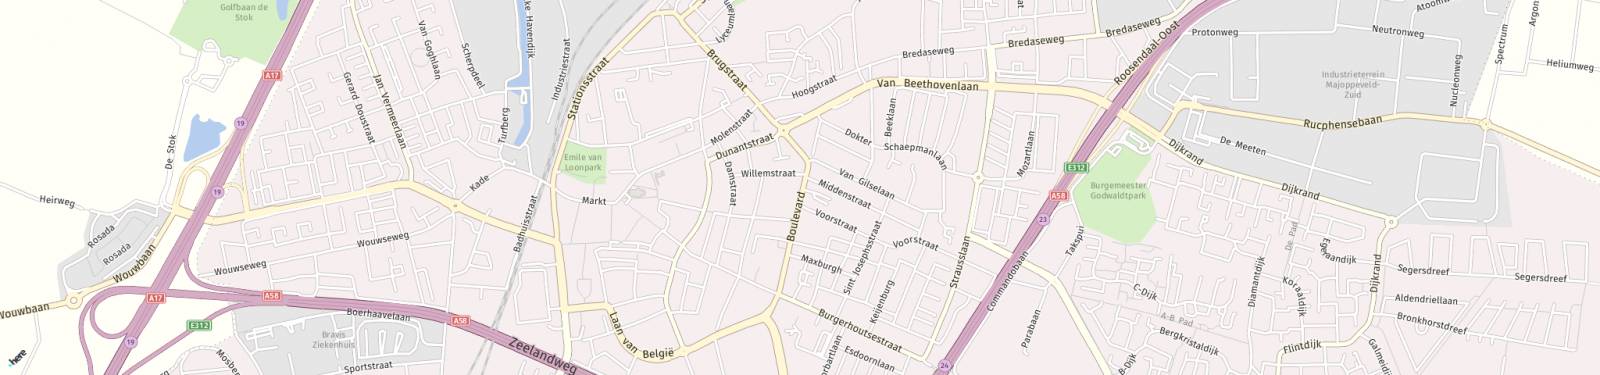 Kaart met locatie Studio Boulevard